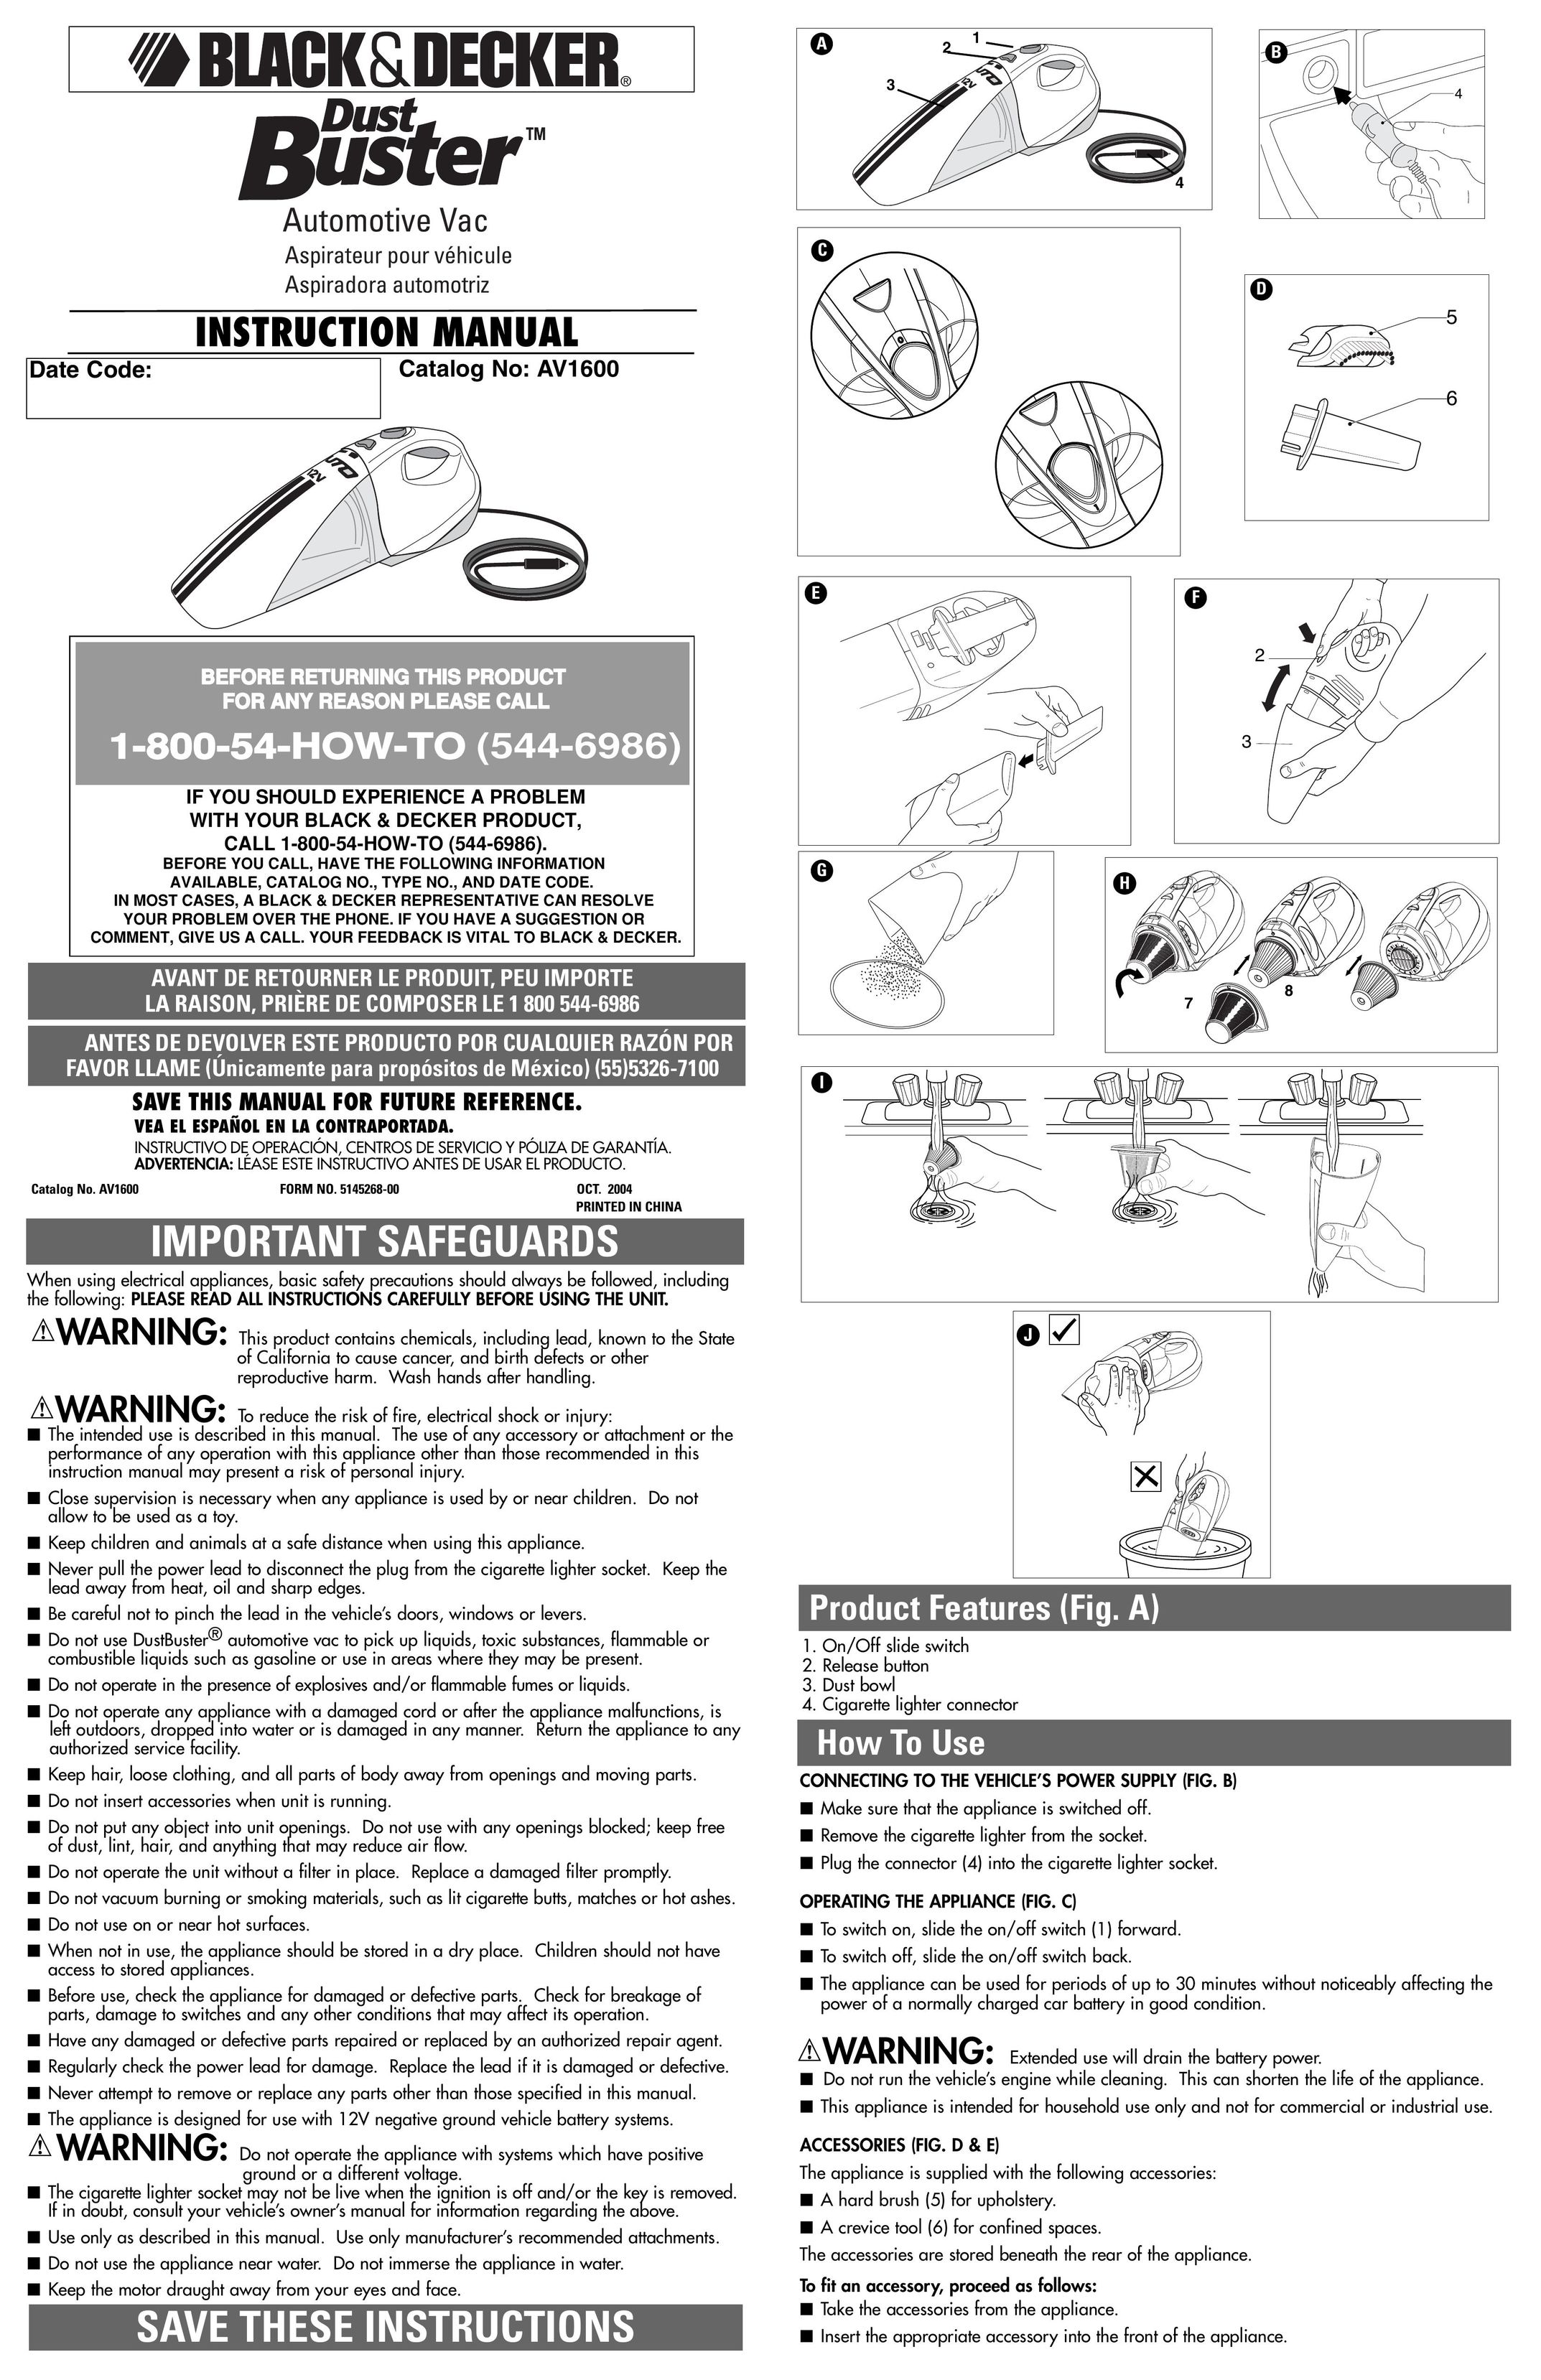 Black & Decker AV1600 Vacuum Cleaner User Manual